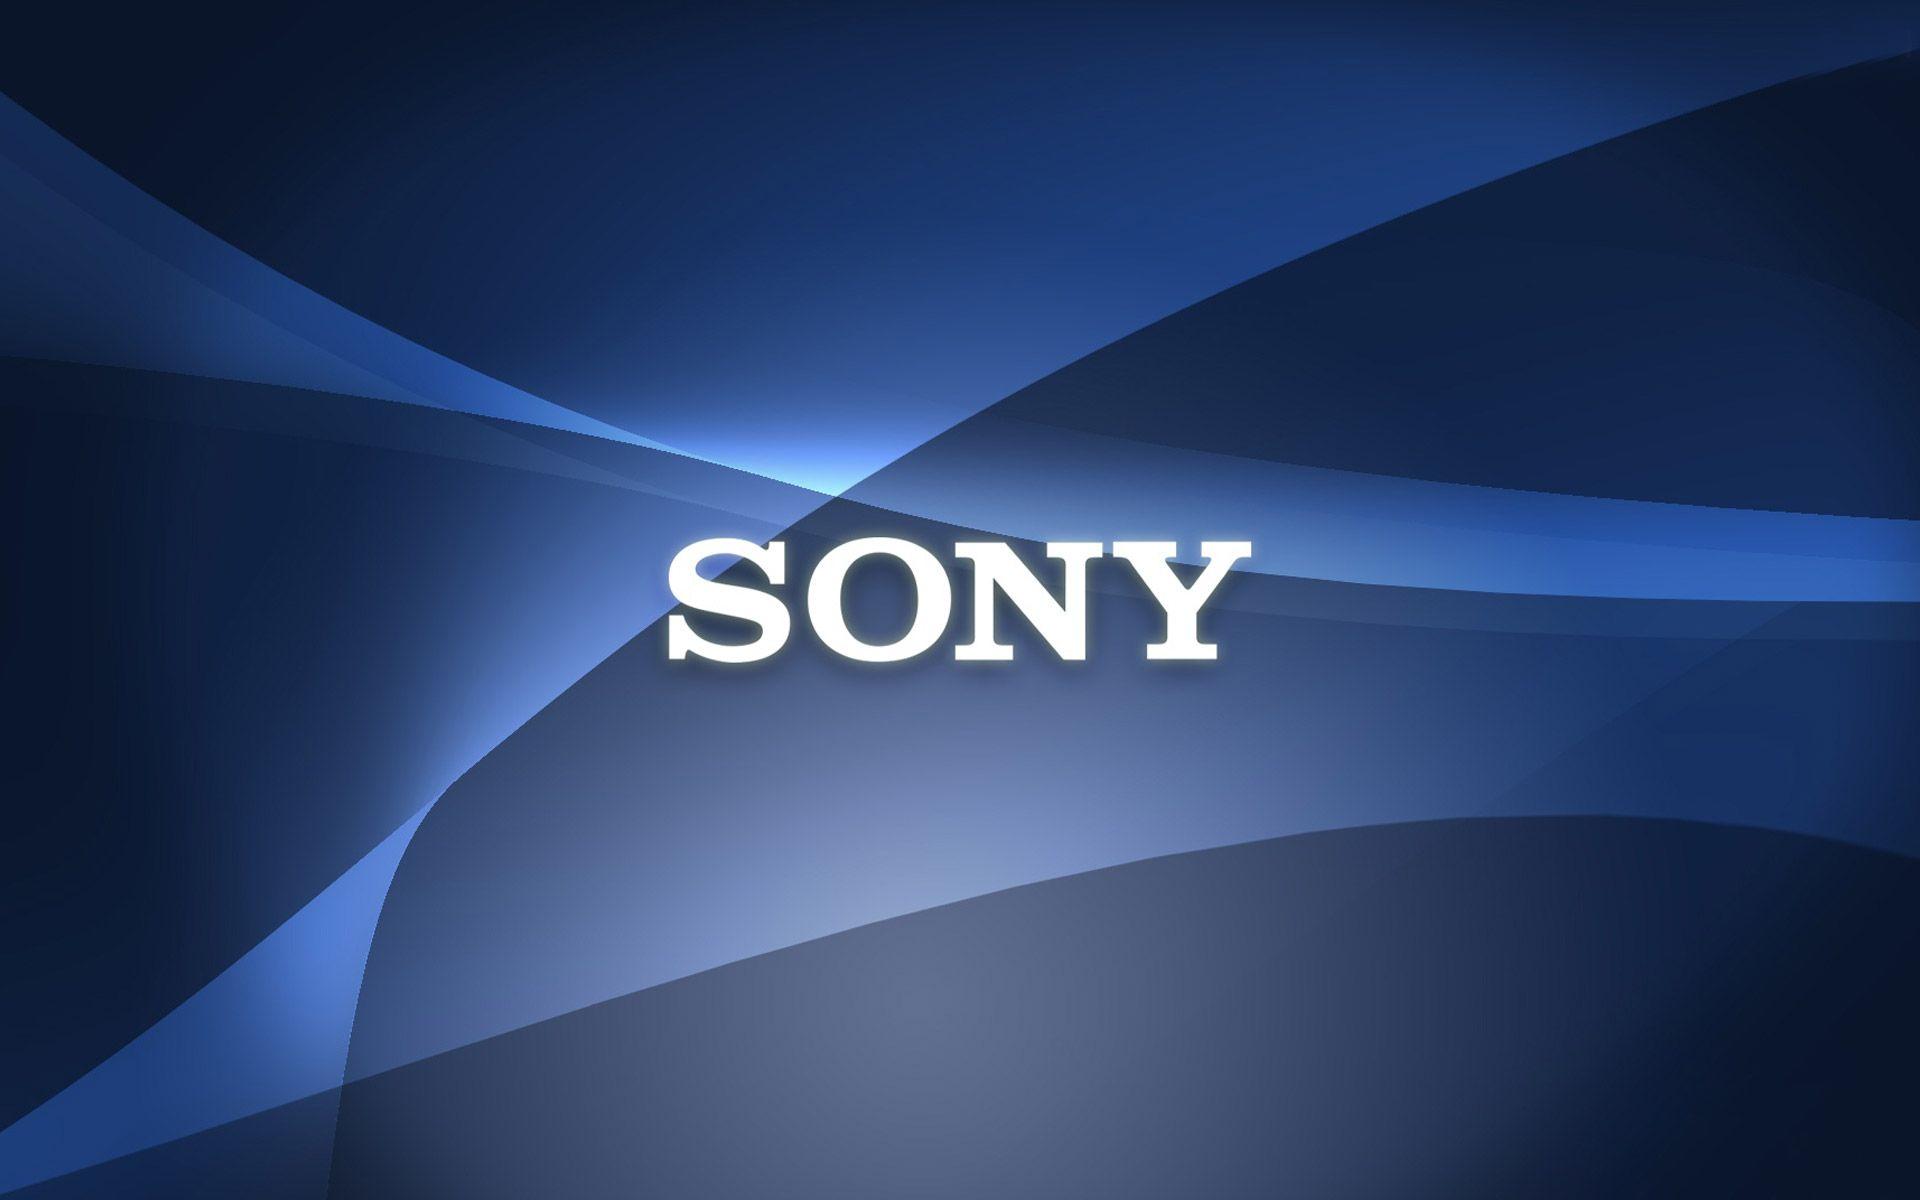 Sony PlayStation Logo Wallpaper. Sony xperia, Sony